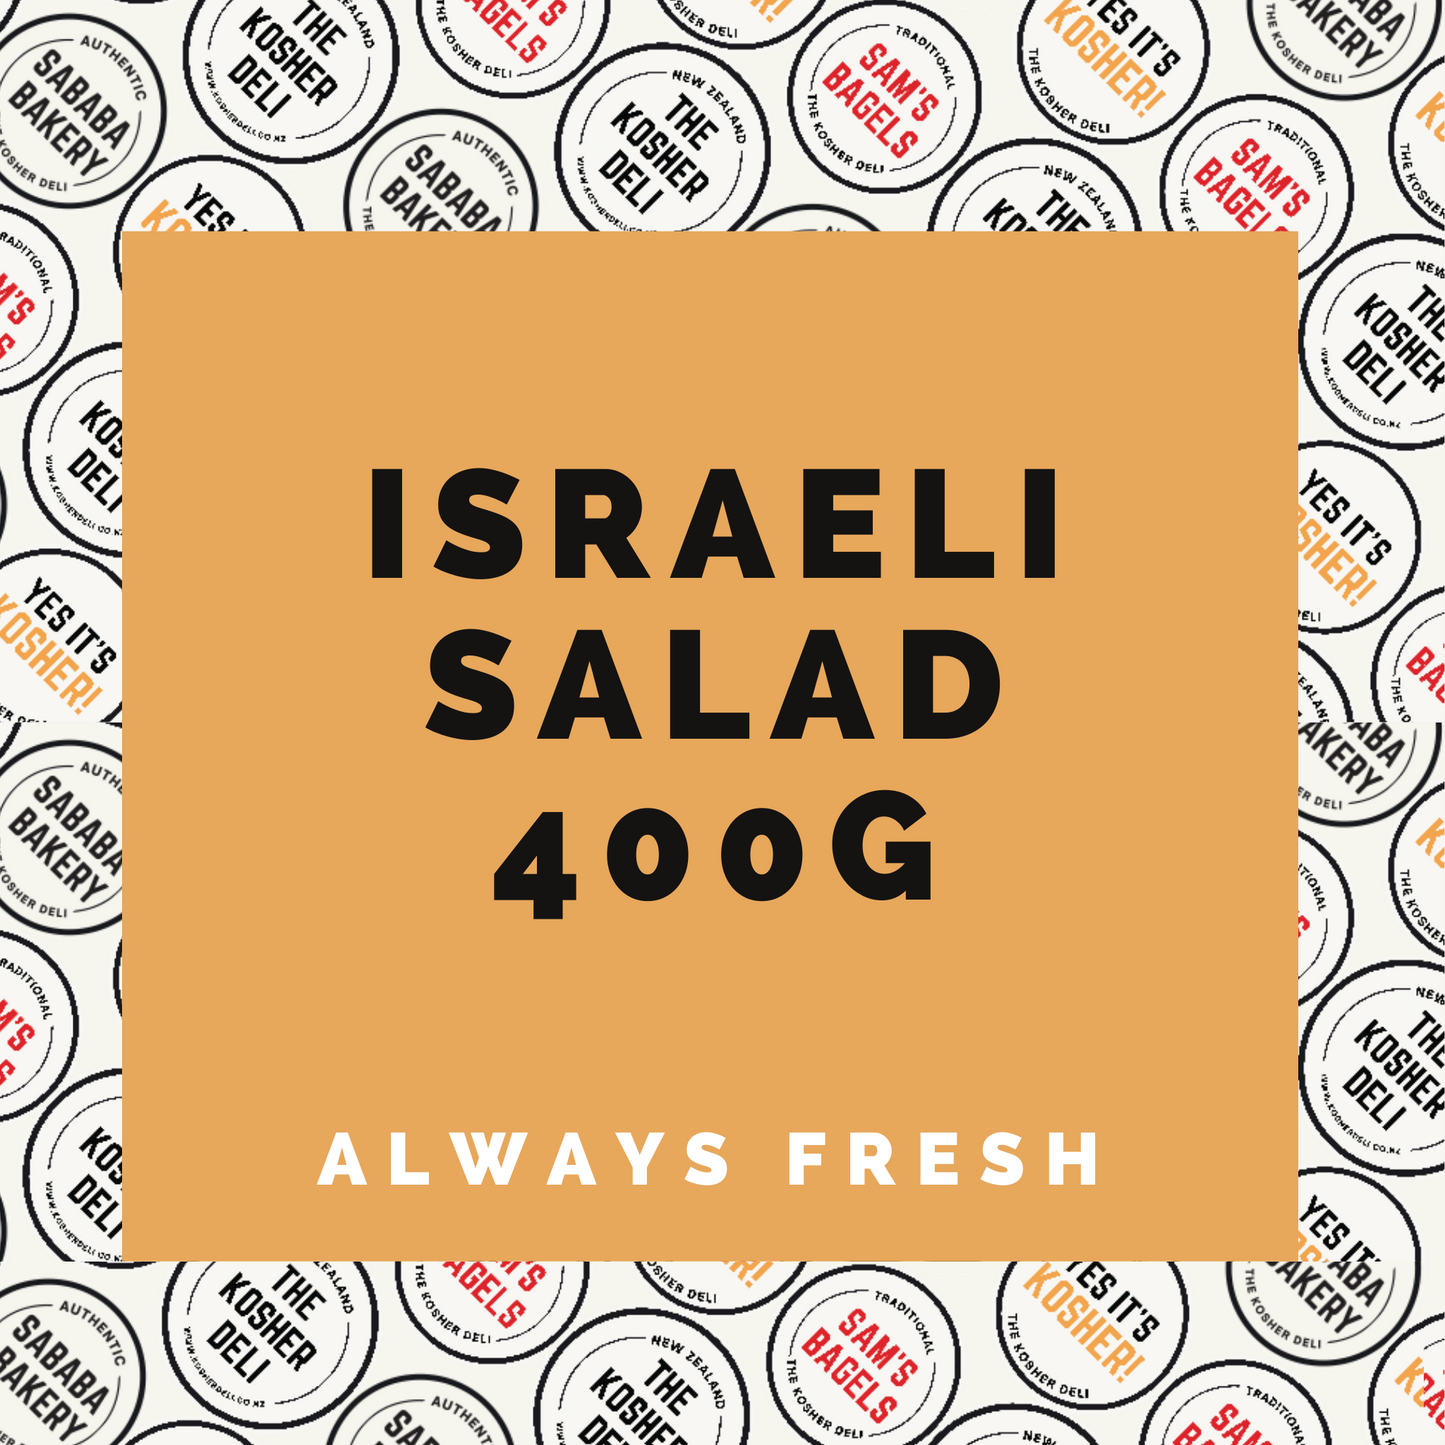 Israeli salad 400g